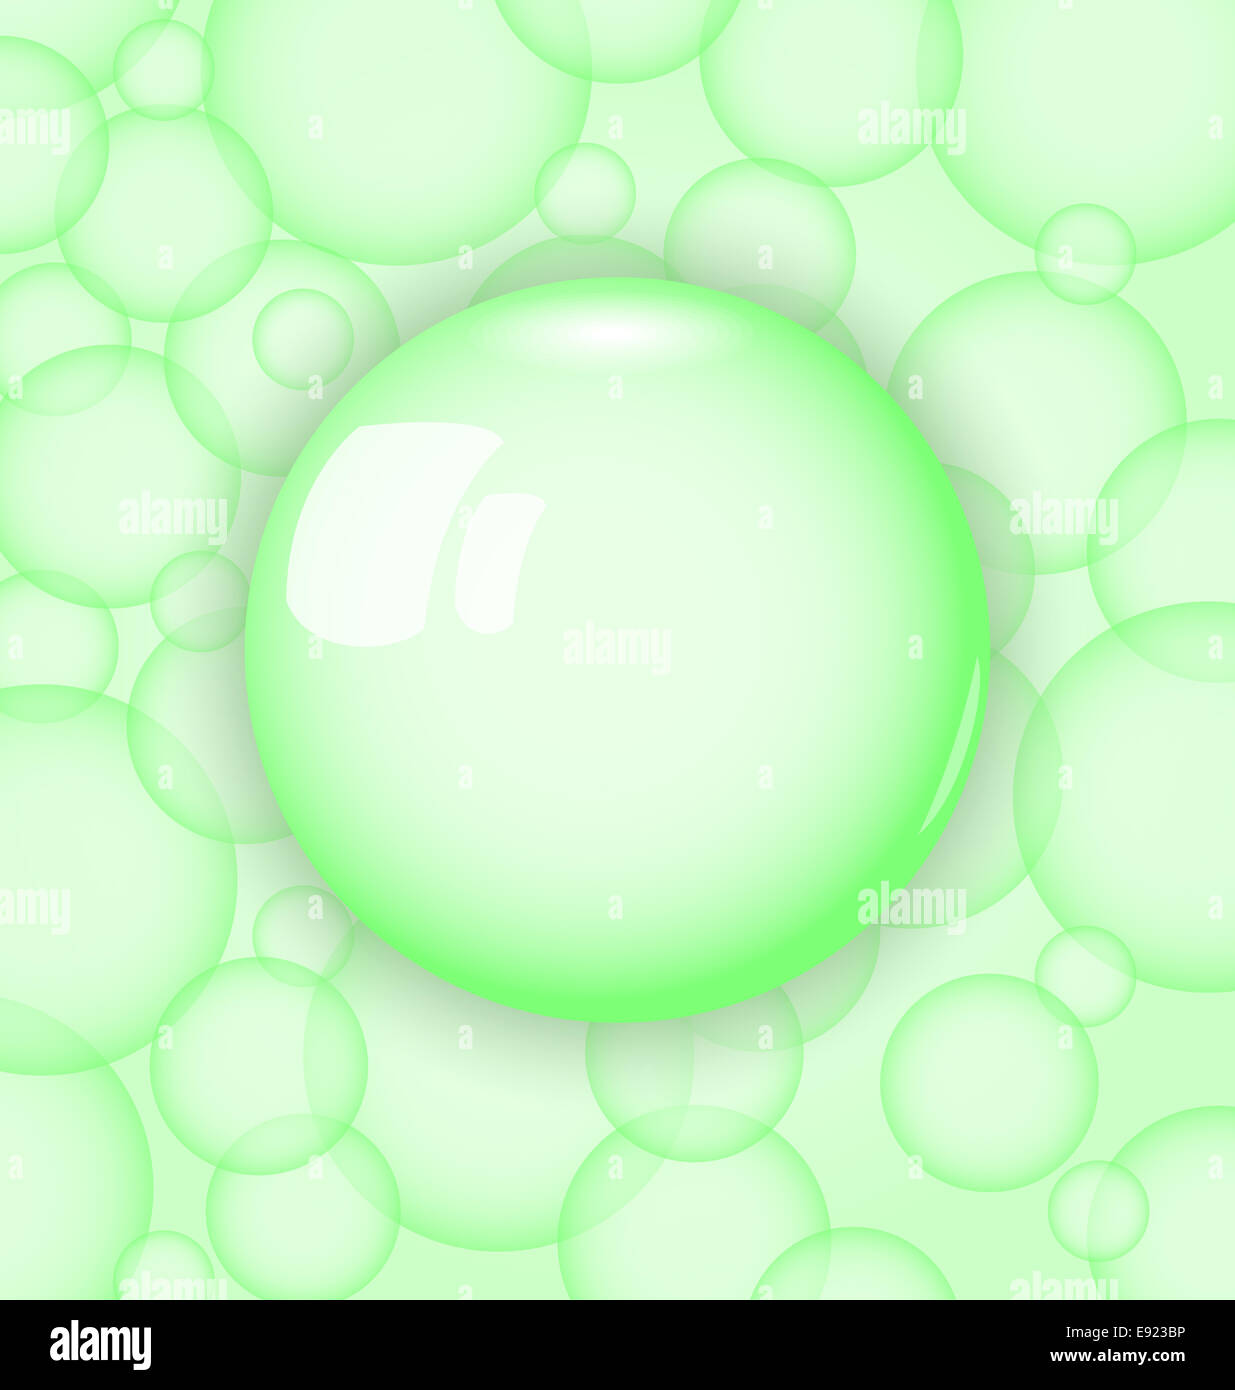 Transparencia la pelota con la burbuja de jabón Foto de stock